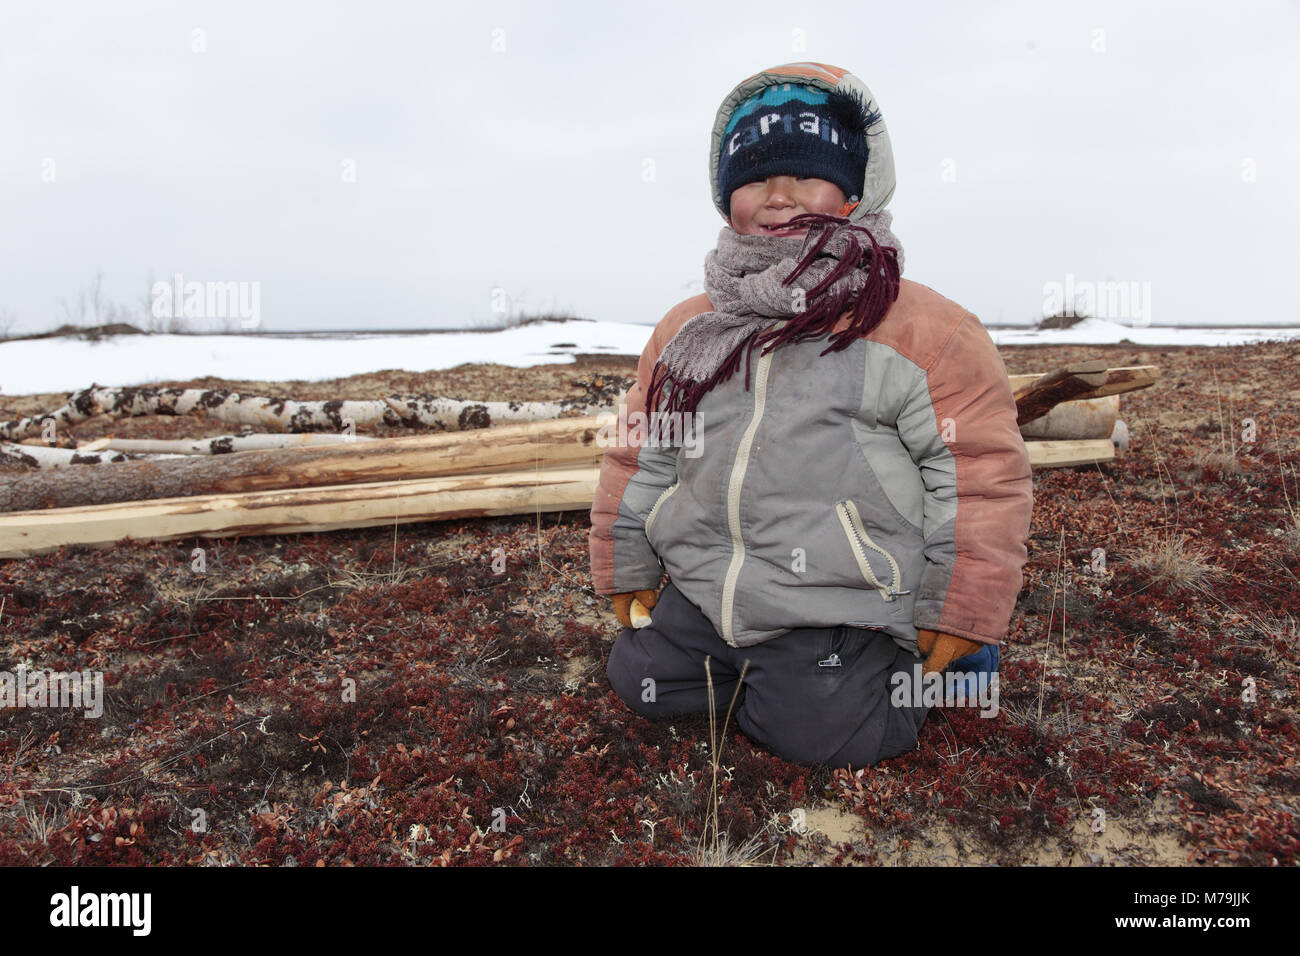 Northern Europe, Russia, Nanya Mar, Nenets, reindeer shepherds, boy, child, Stock Photo